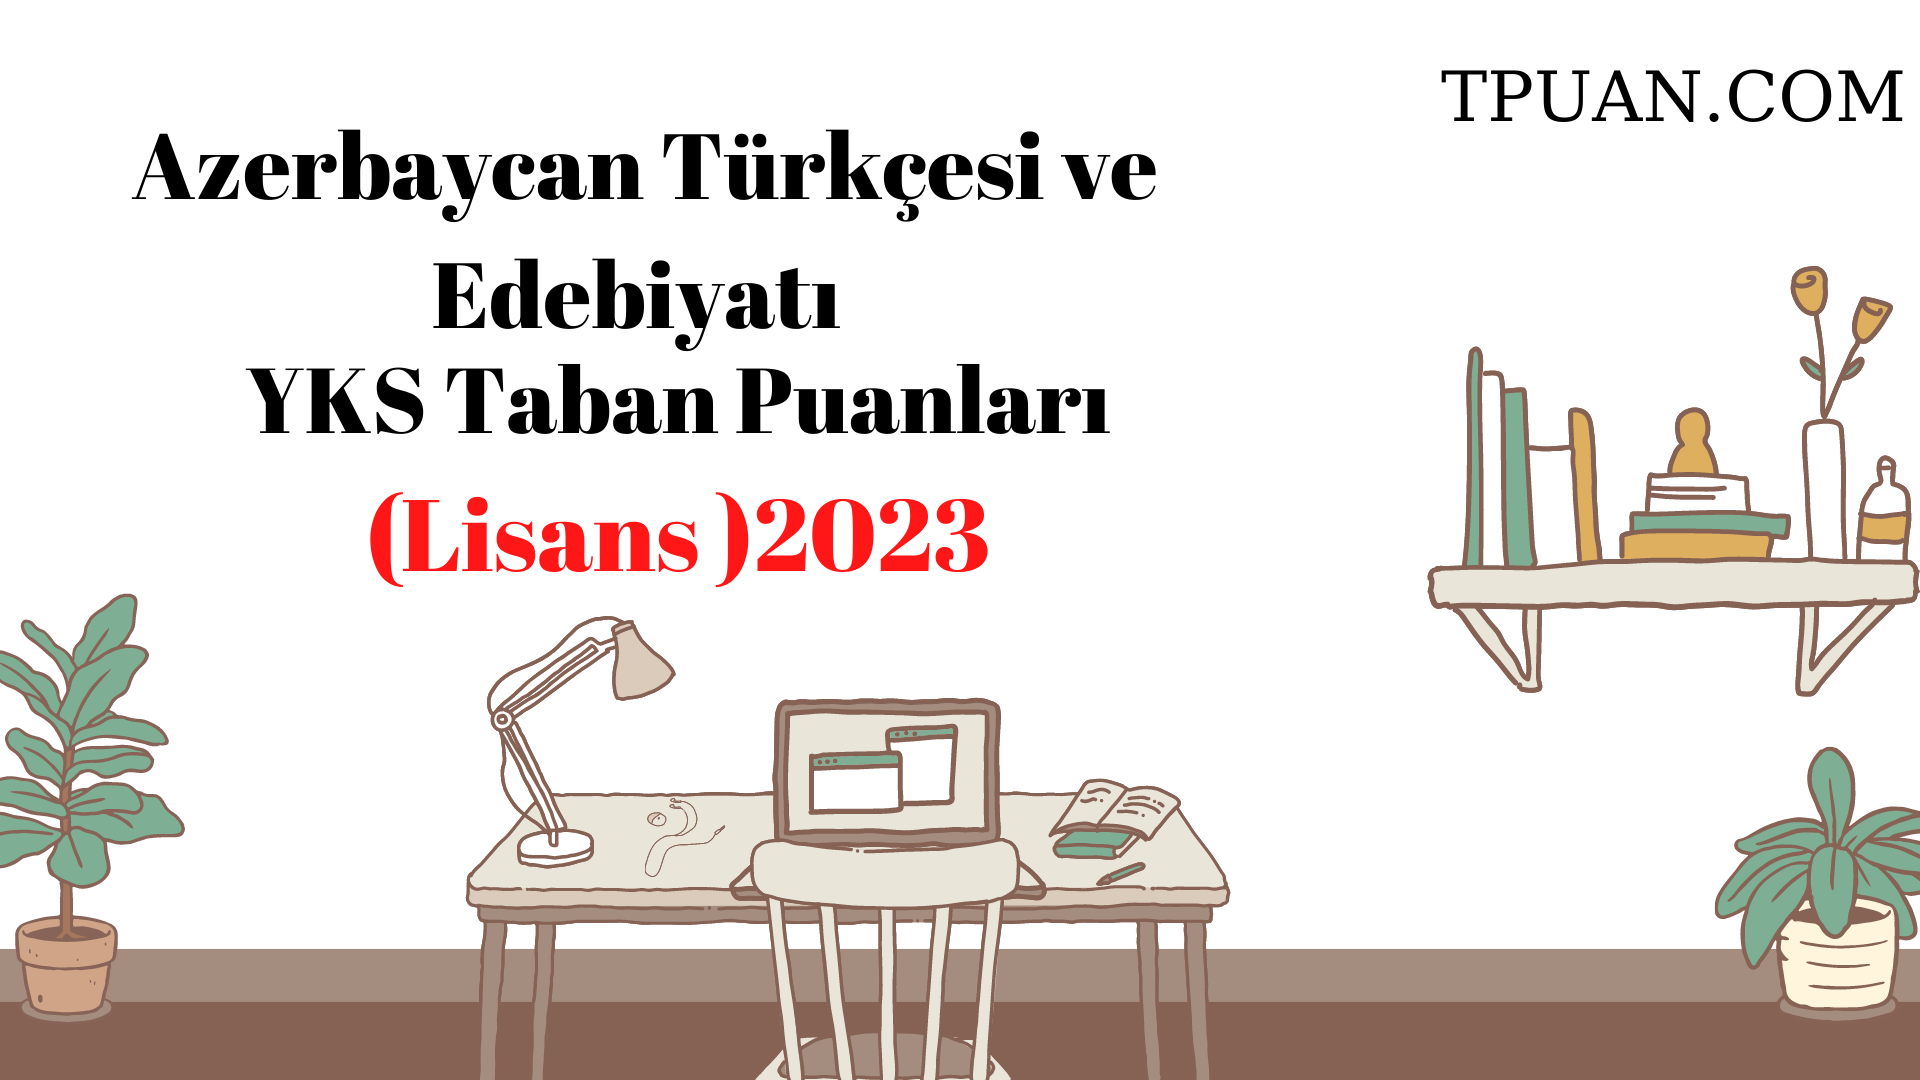  Azerbaycan Türkçesi ve Edebiyatı Bölümü YKS Taban Puanları (4 Yıllık) 2023